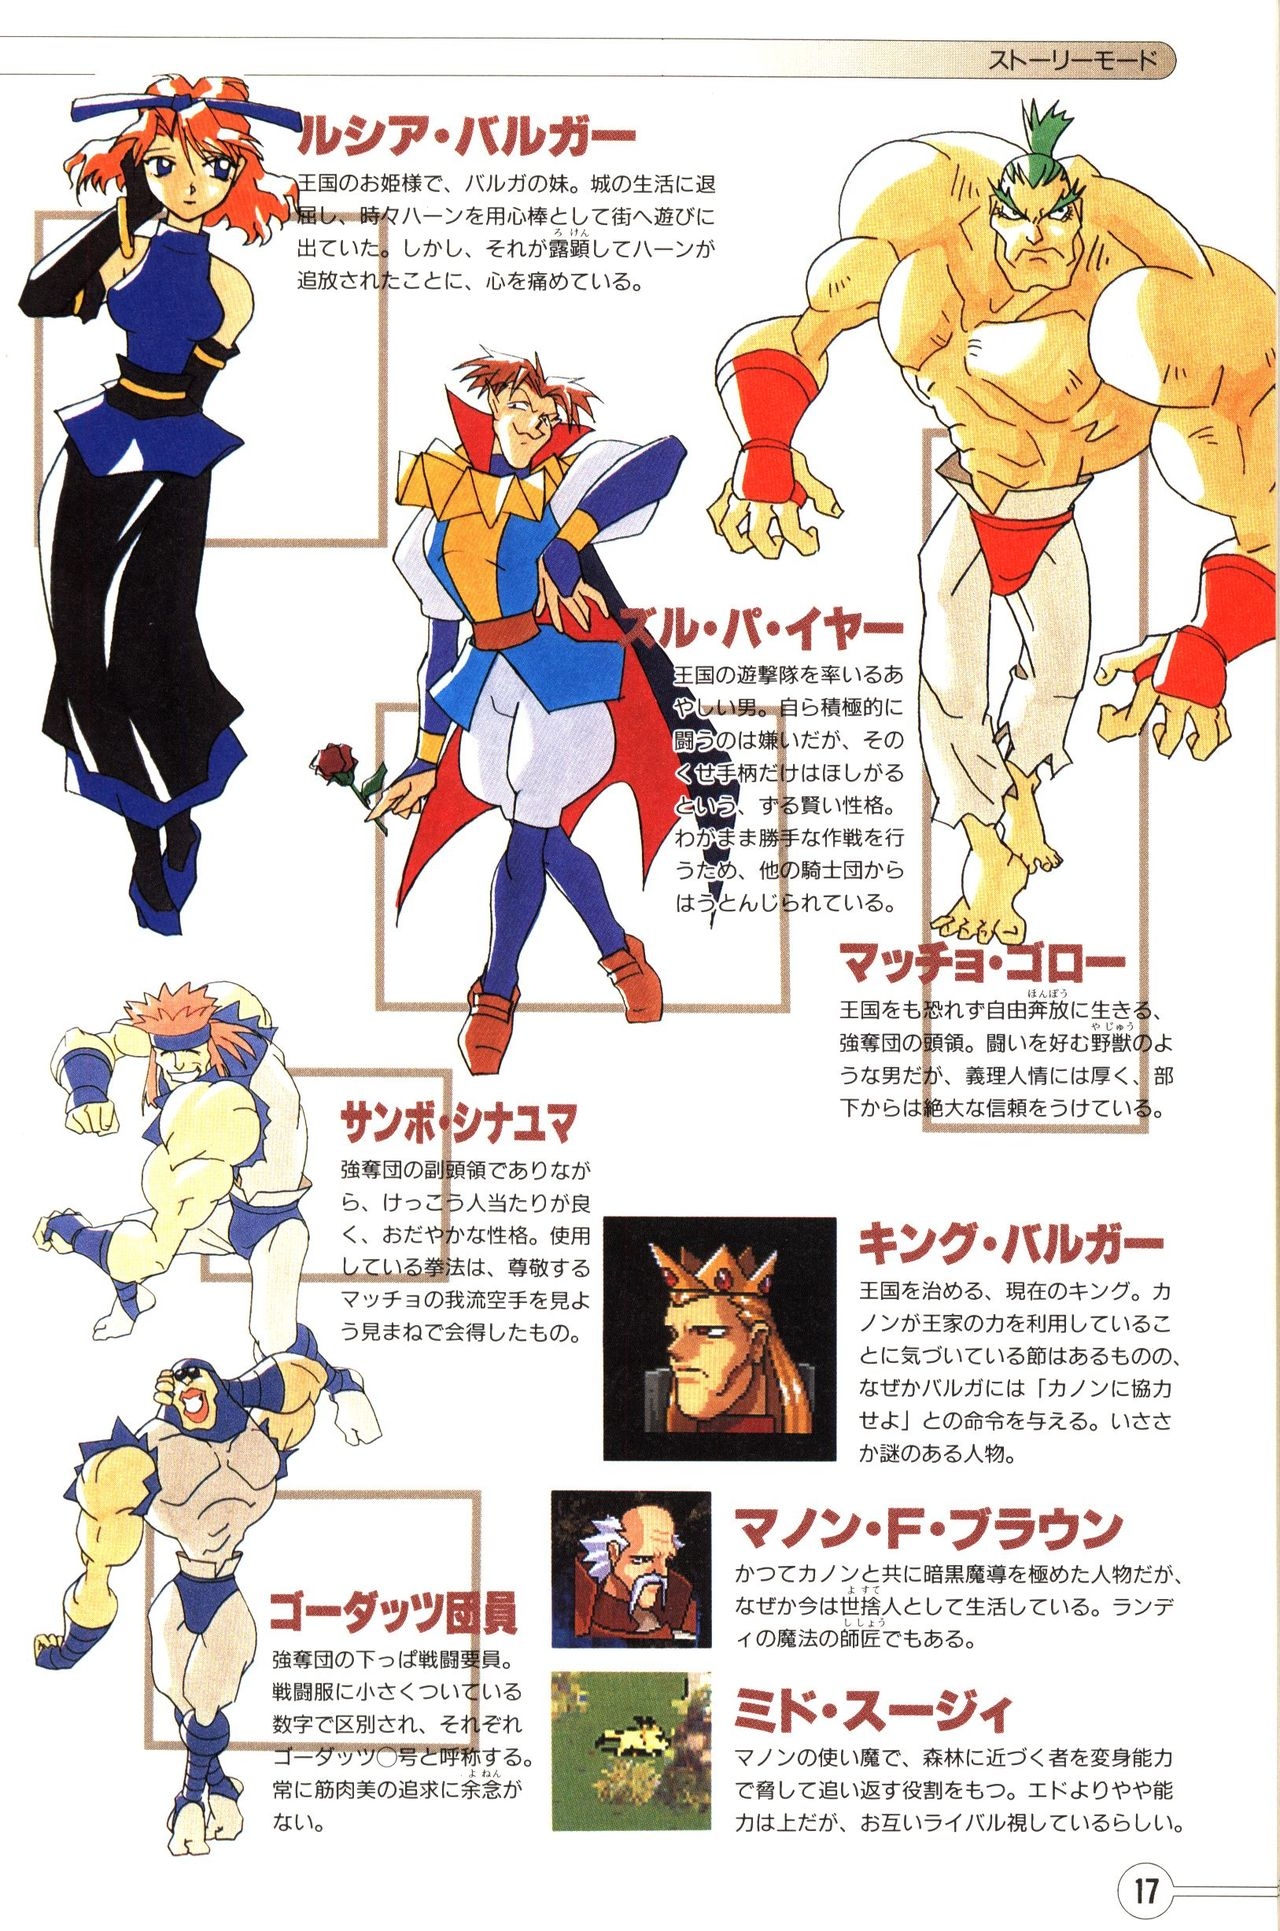 Guardian Heroes Perfect Guide (Sega Saturn magazine books) 19